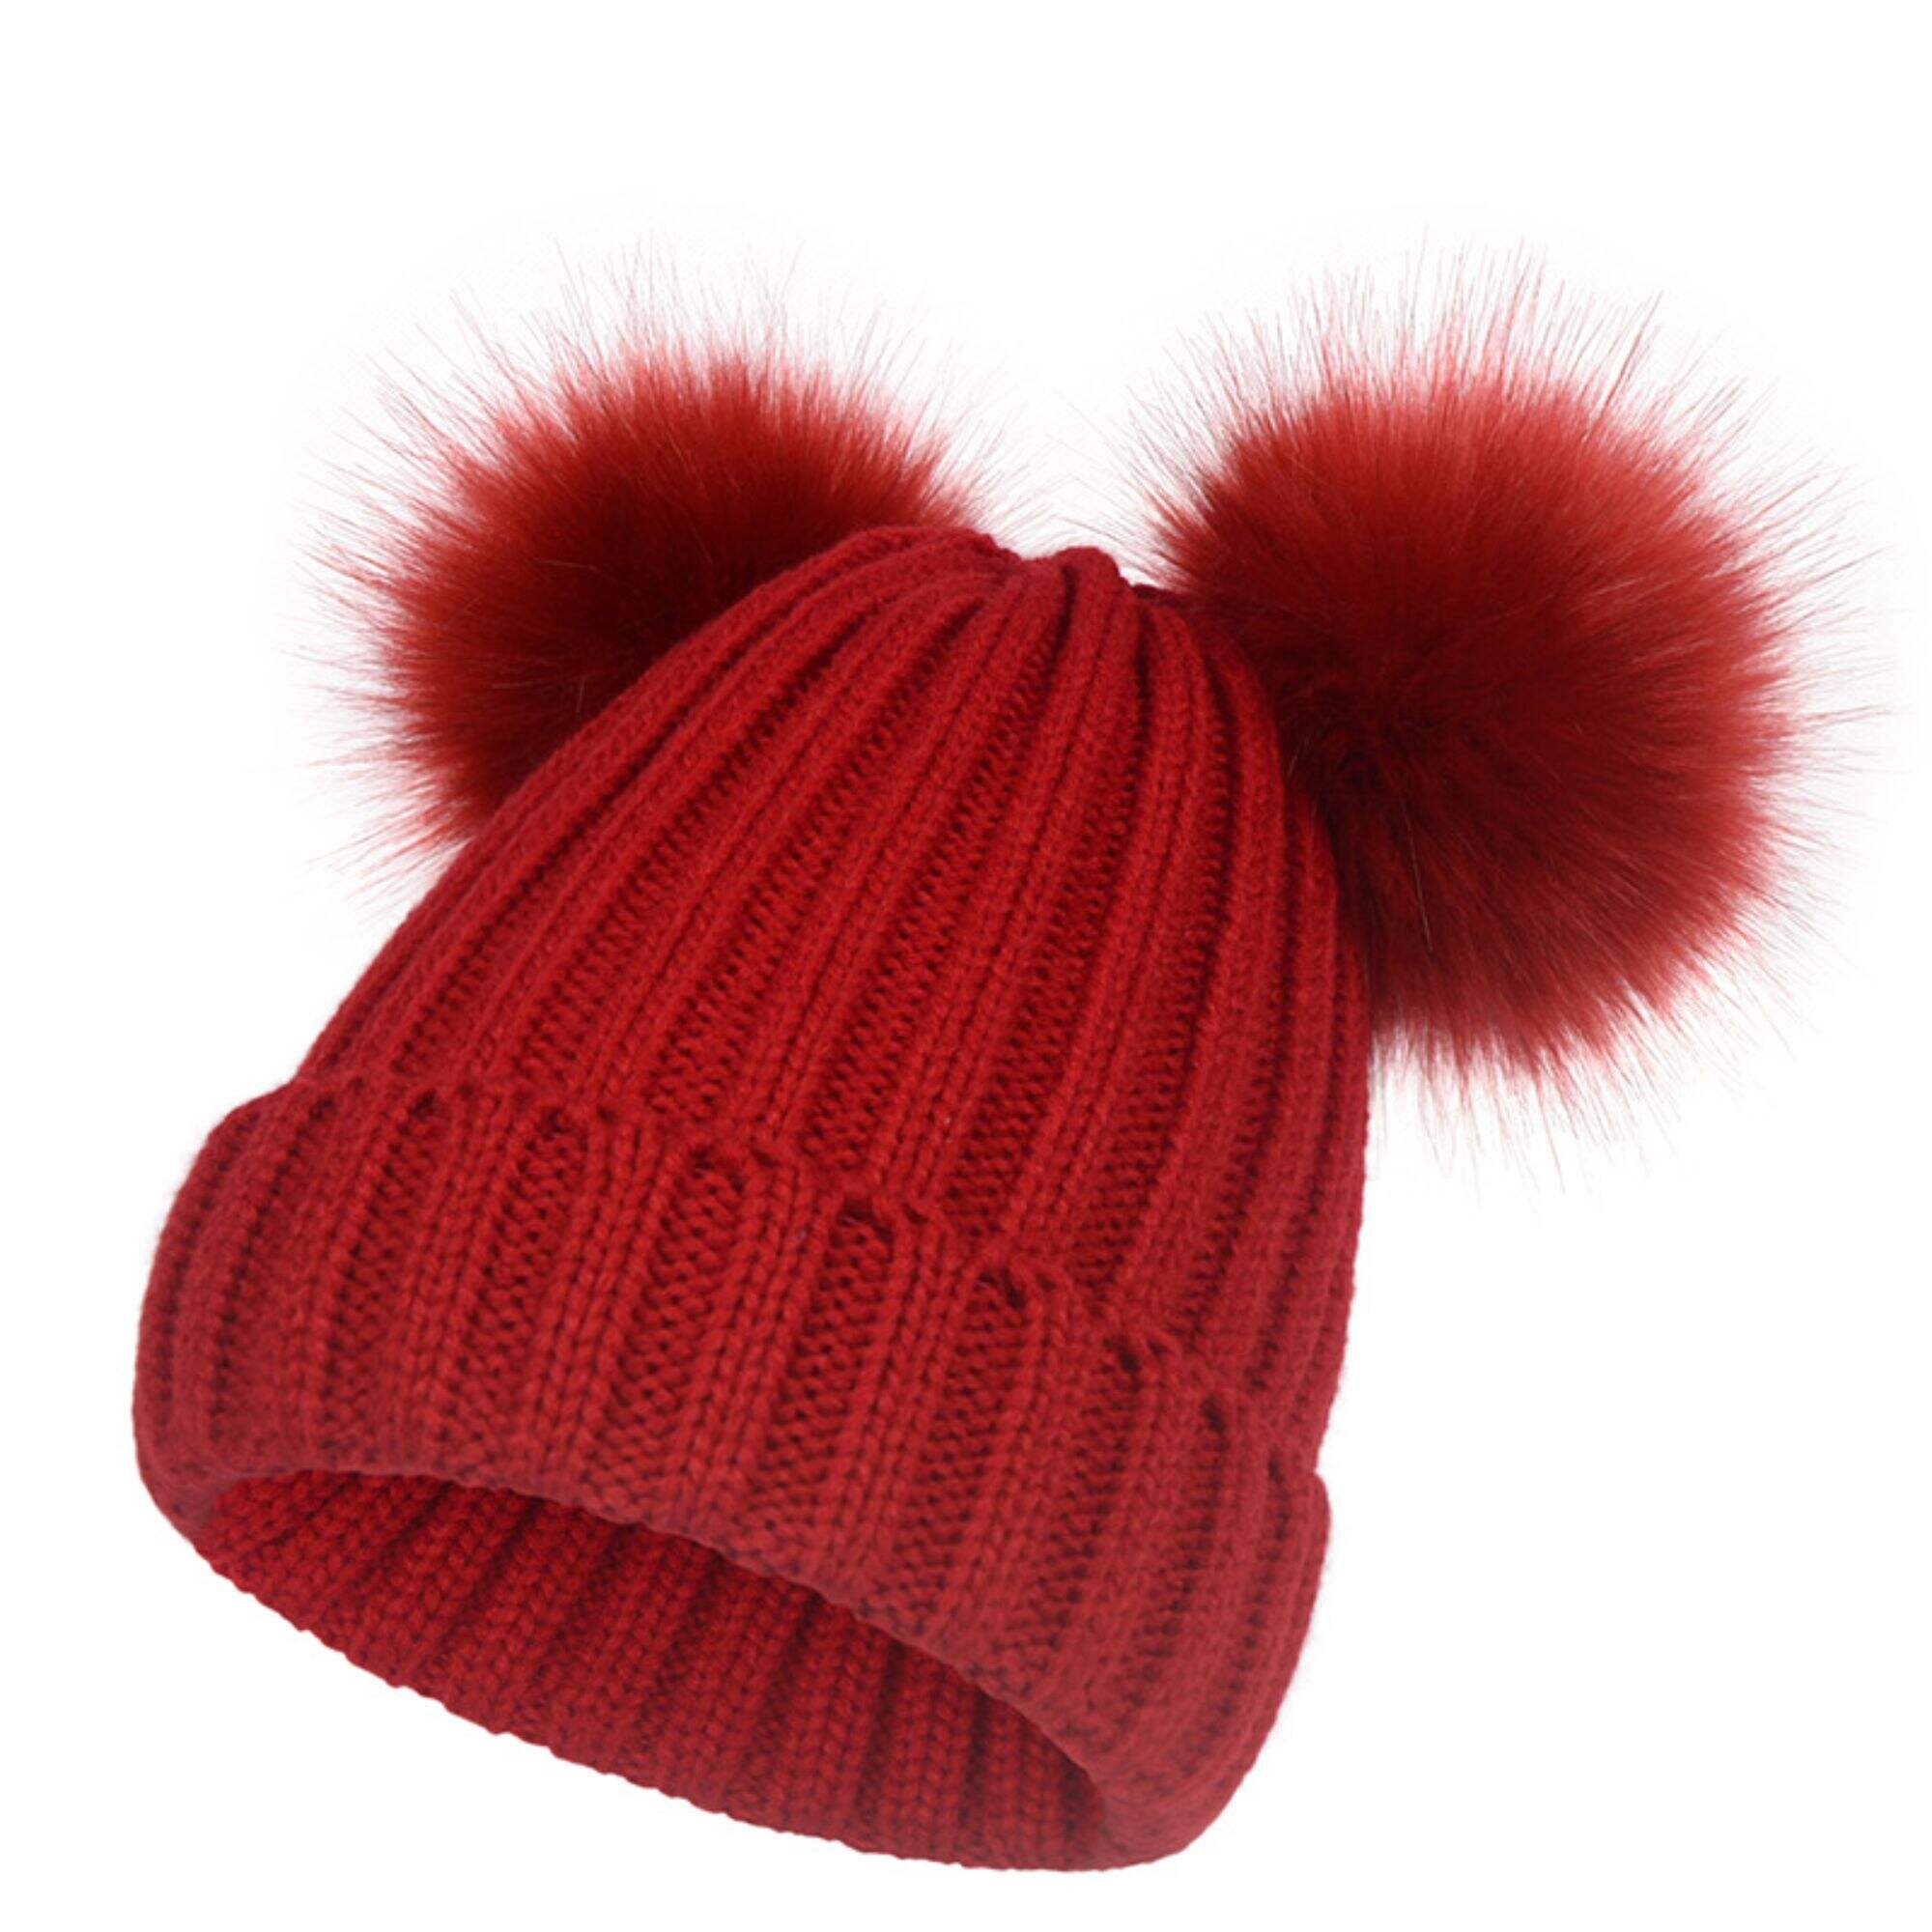 Winter hat with pom pom